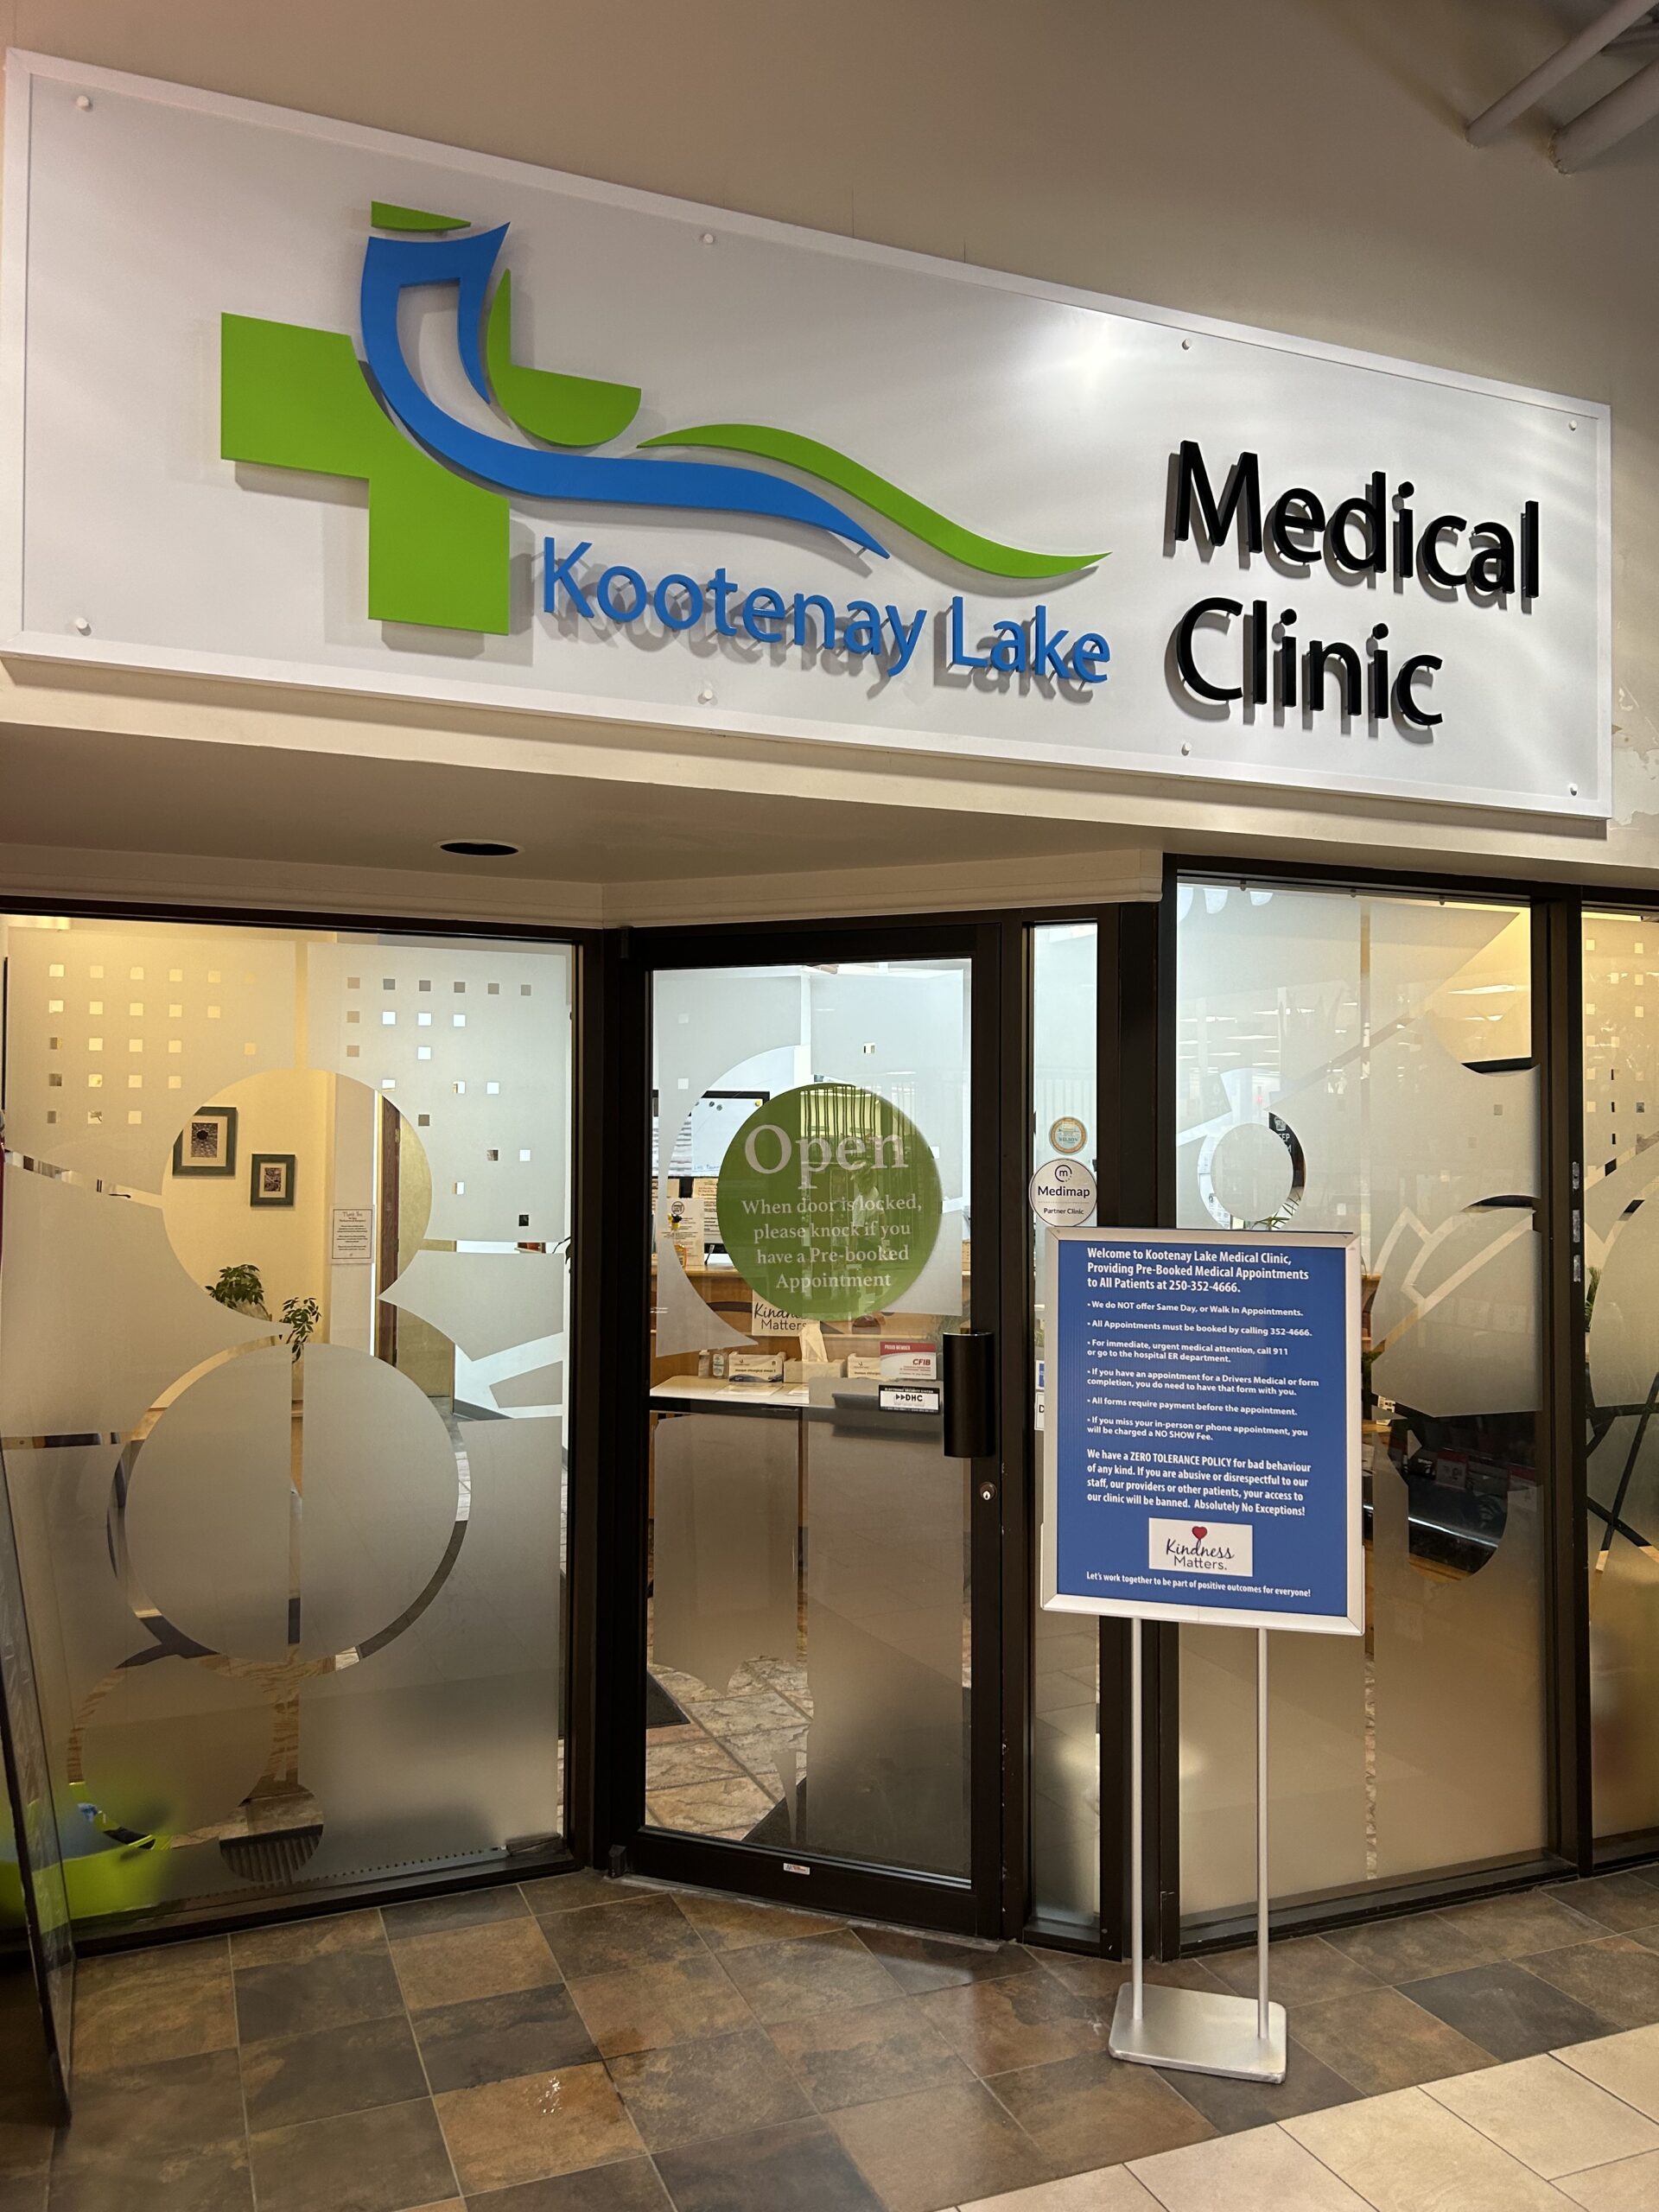 Contact – Kootenay Lake Medical Clinic